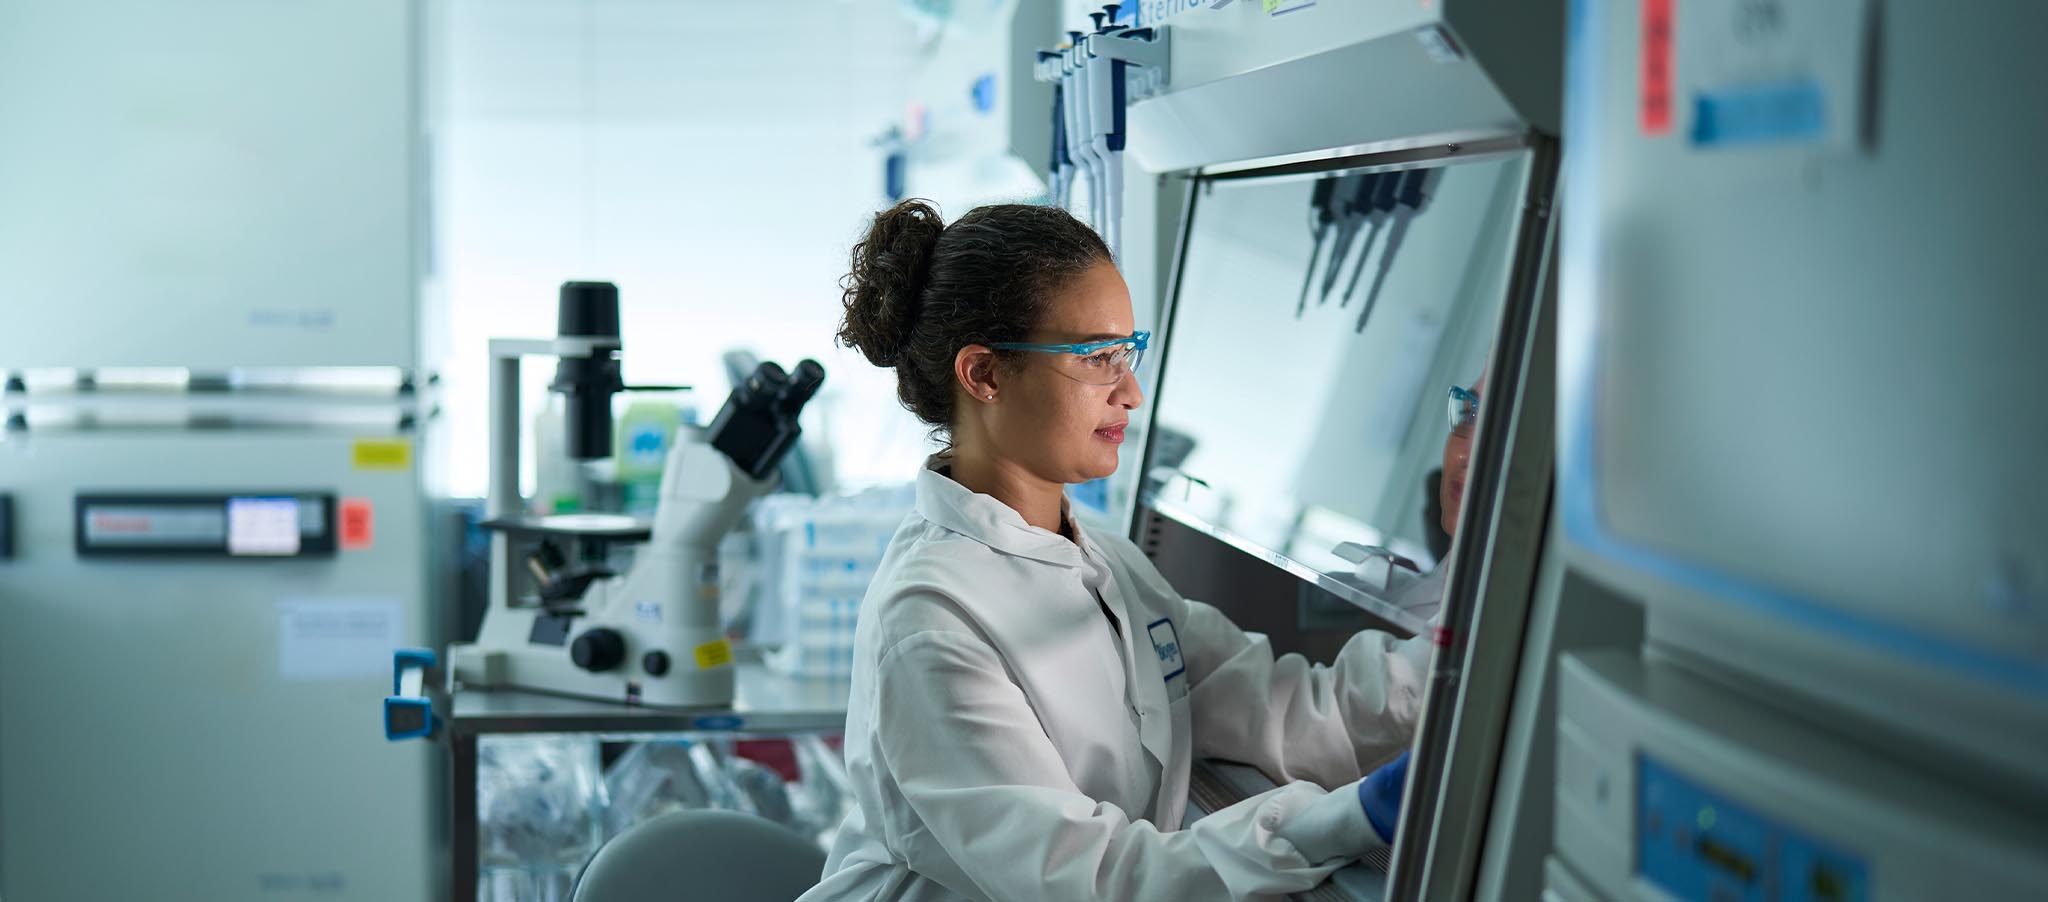 Biogen employee working in a lab